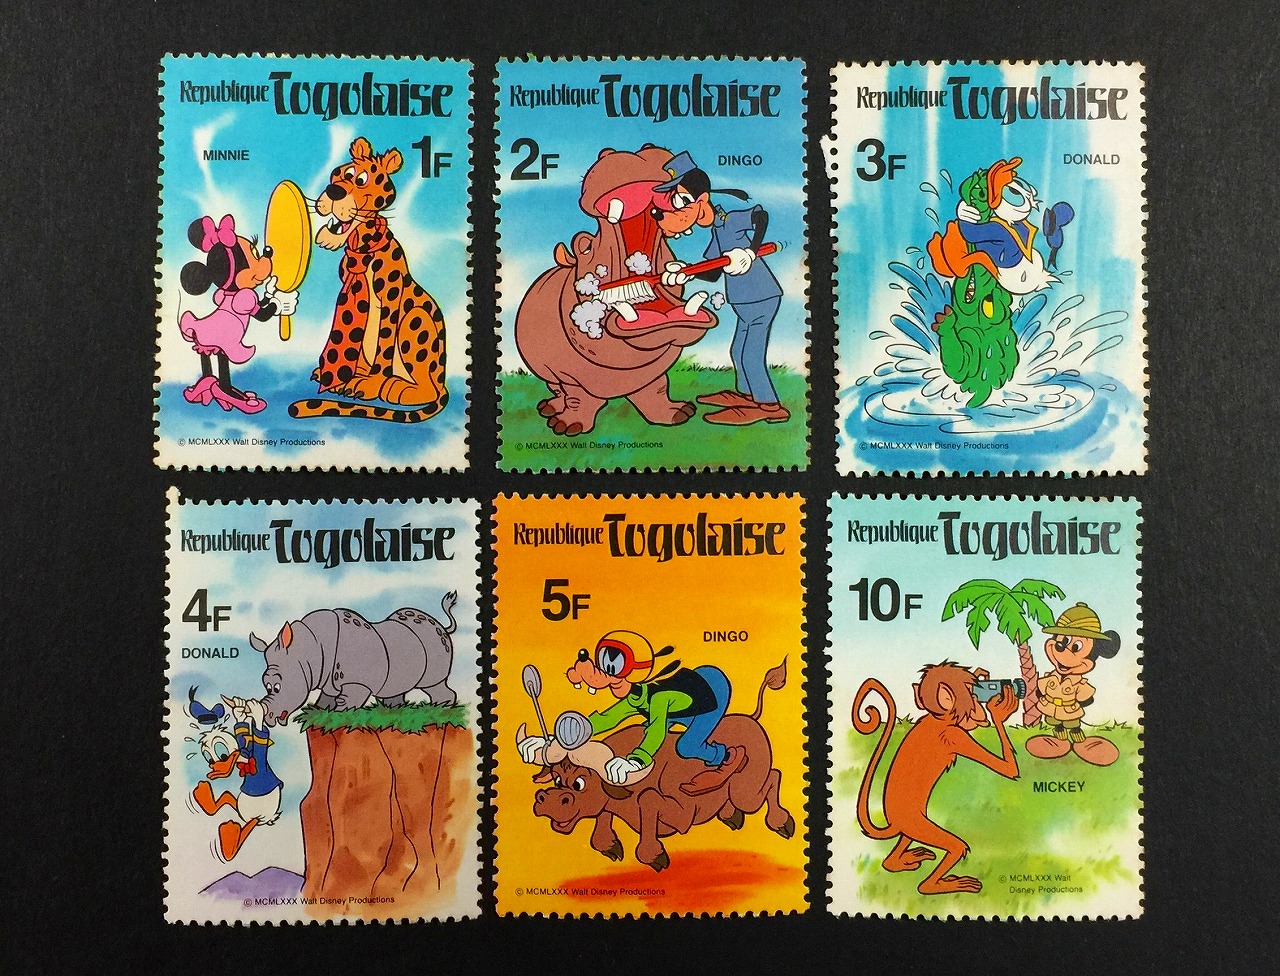 ディズニー切手 republique togolaise切手 6種セット